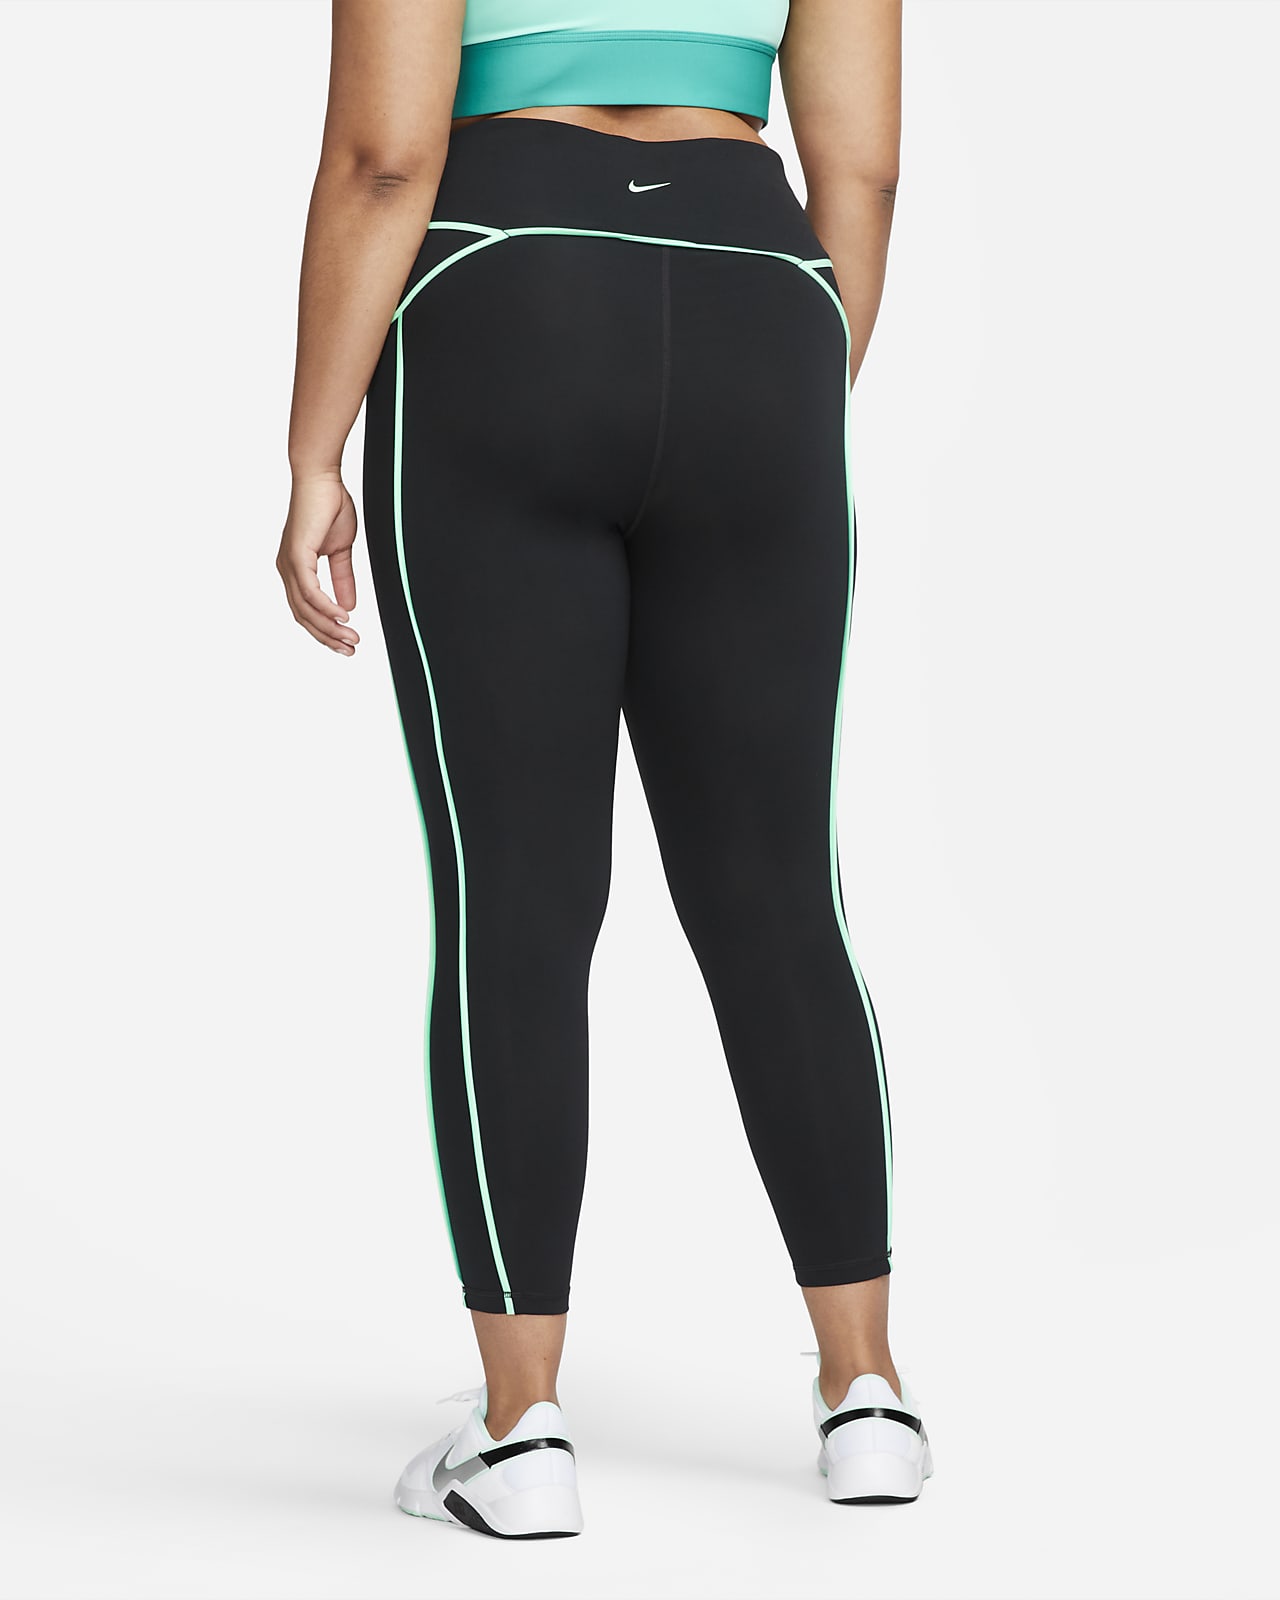 Nike Pro Women's Mid-Rise 7/8 Training Leggings (Plus Size).